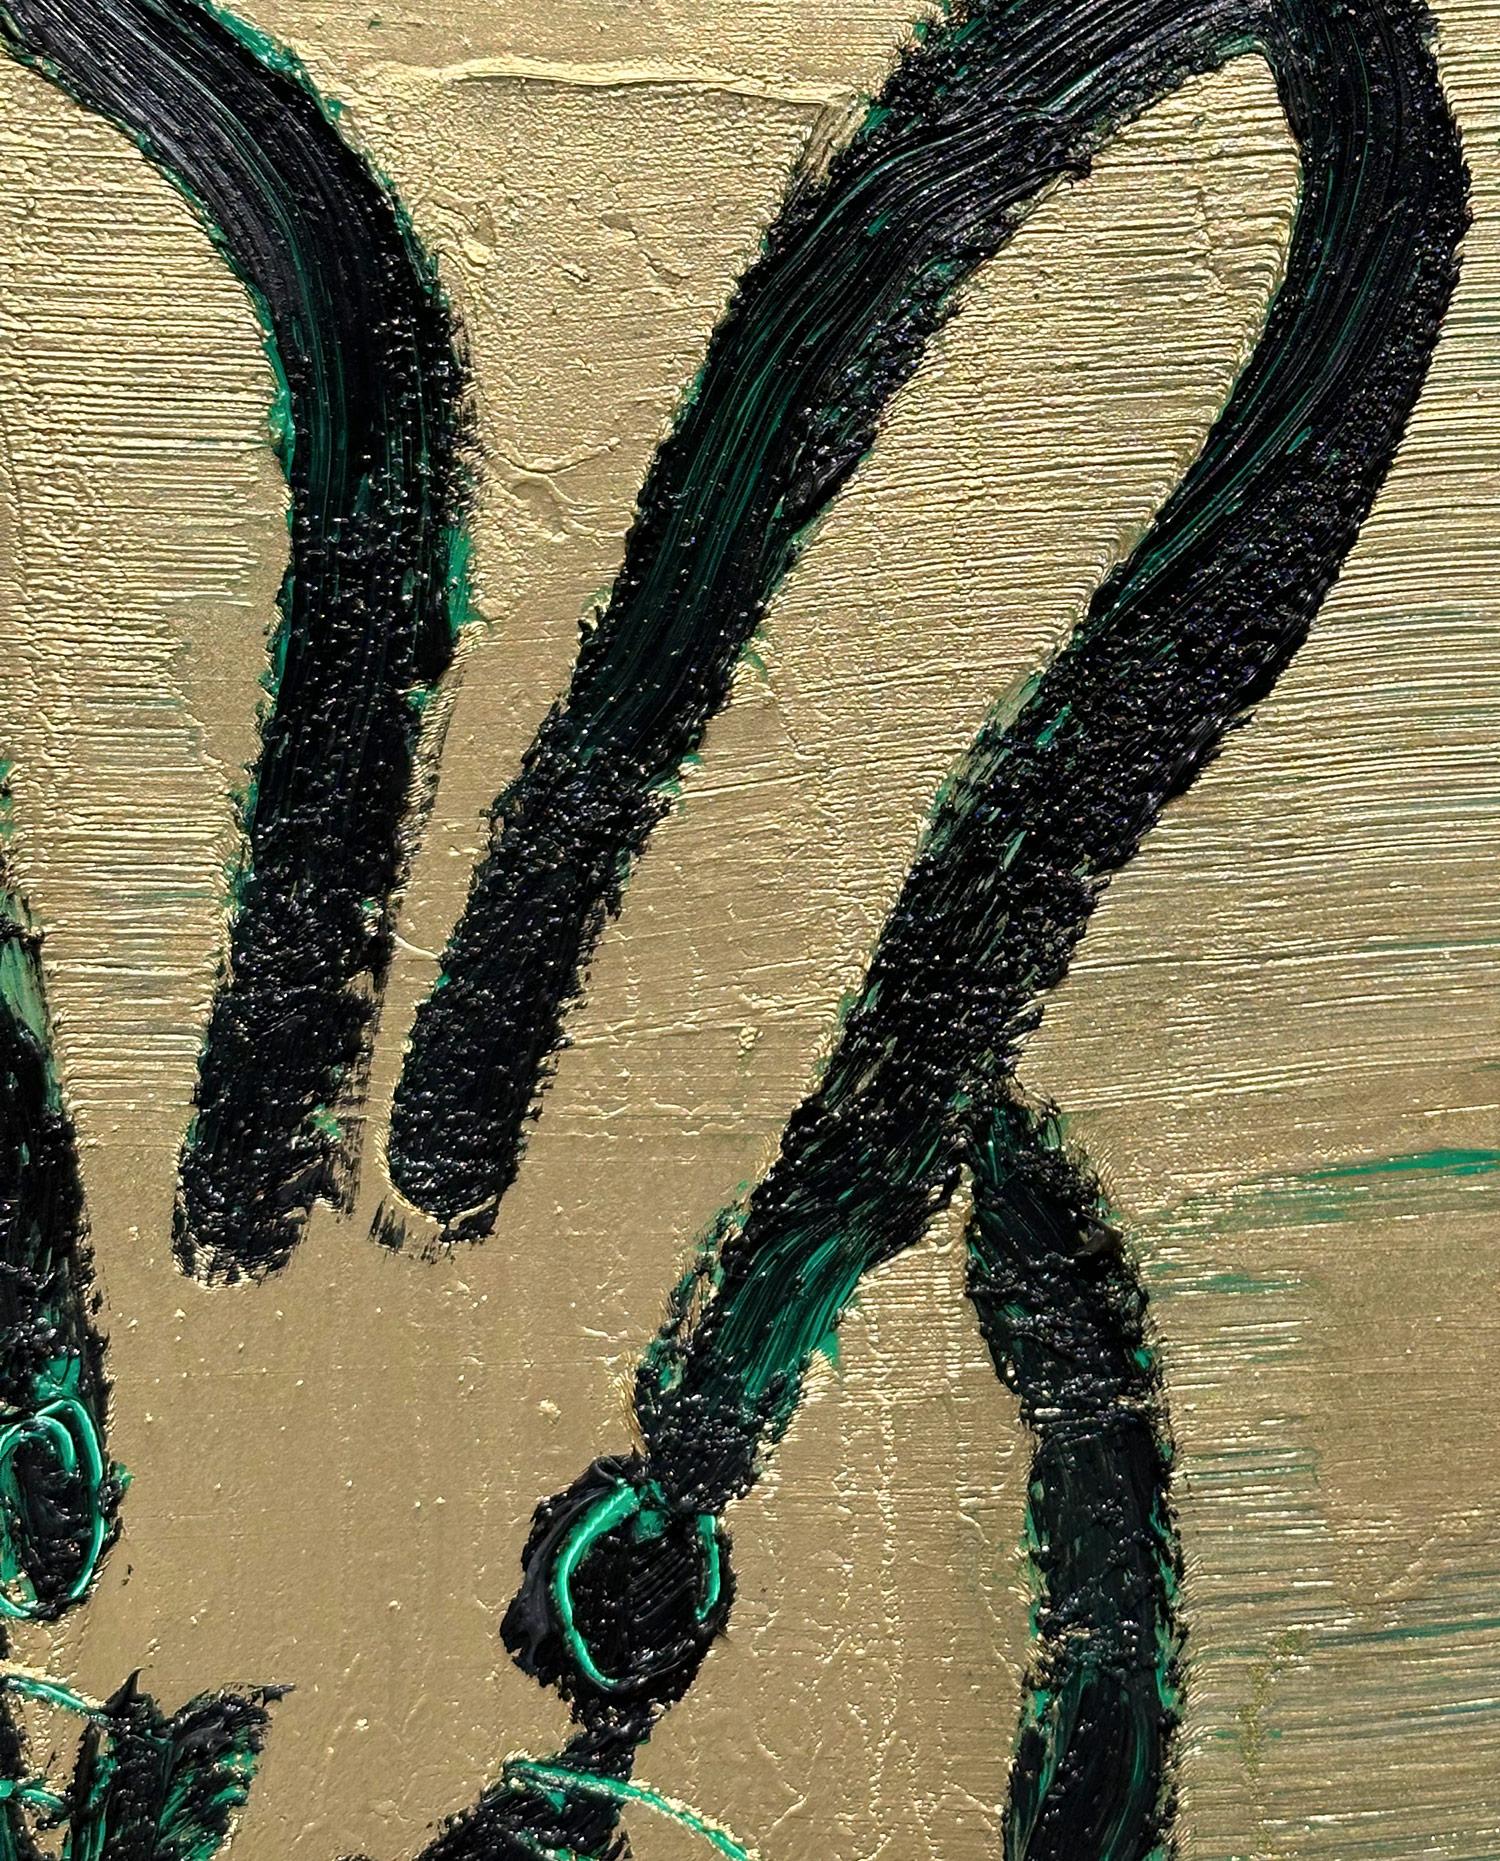 Eine wunderbare Komposition eines der ikonischsten Themen von Slonem, nämlich Hasen. Dieses Werk zeigt eine gestische Figur eines schwarzen Hasen mit lindgrünen Akzenten und einem goldenen Hintergrund, auf dem reichlich bunte Farbe verwendet wurde.